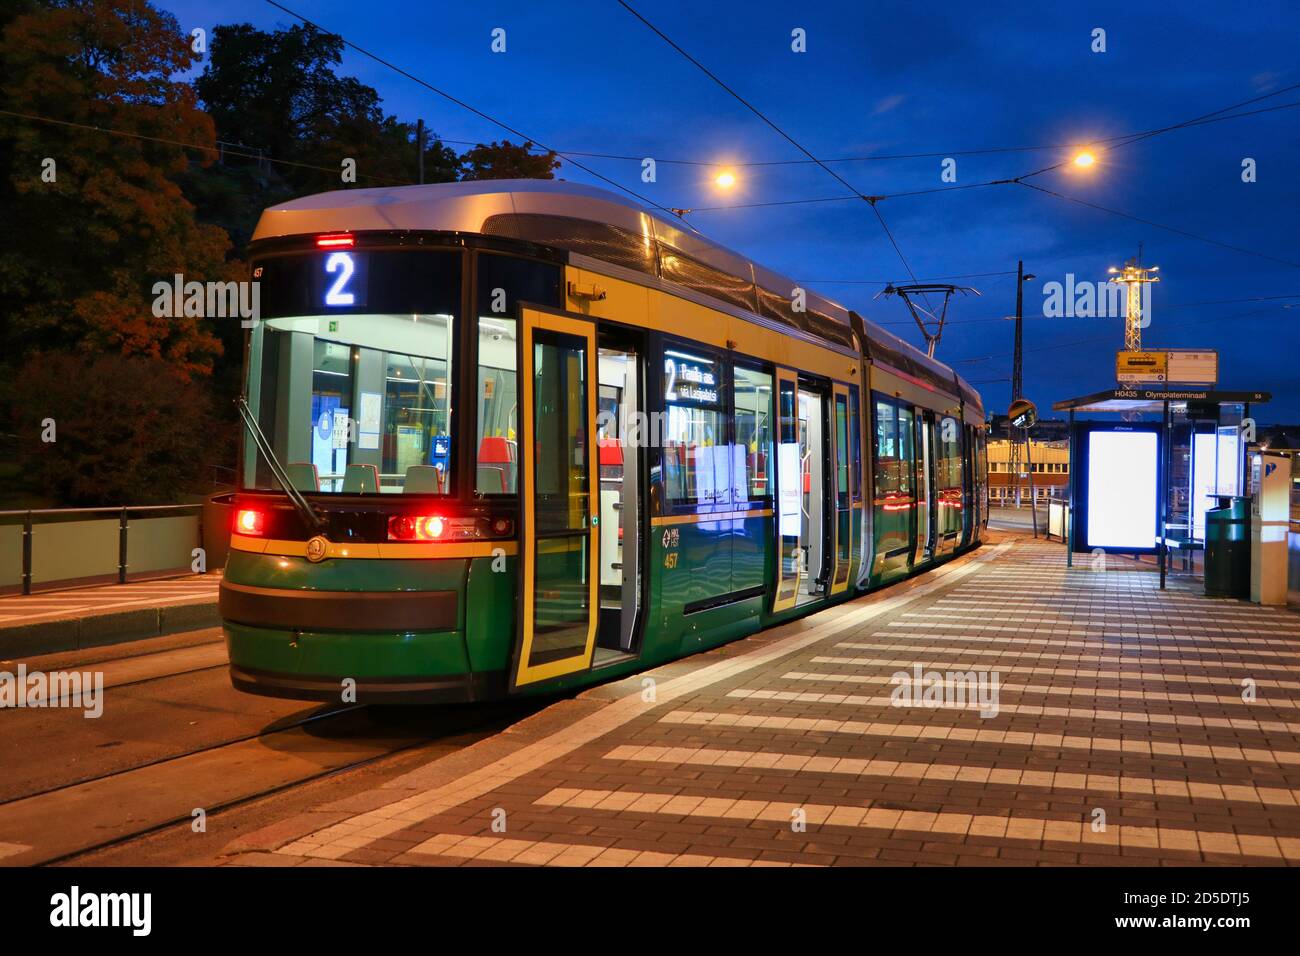 Le tramway n° 2 de HSL s'arrête le matin avant l'aube, avec des feux de rue éclairant la vue sur la ville. Helsinki, Finlande. 29 septembre 2020. Banque D'Images